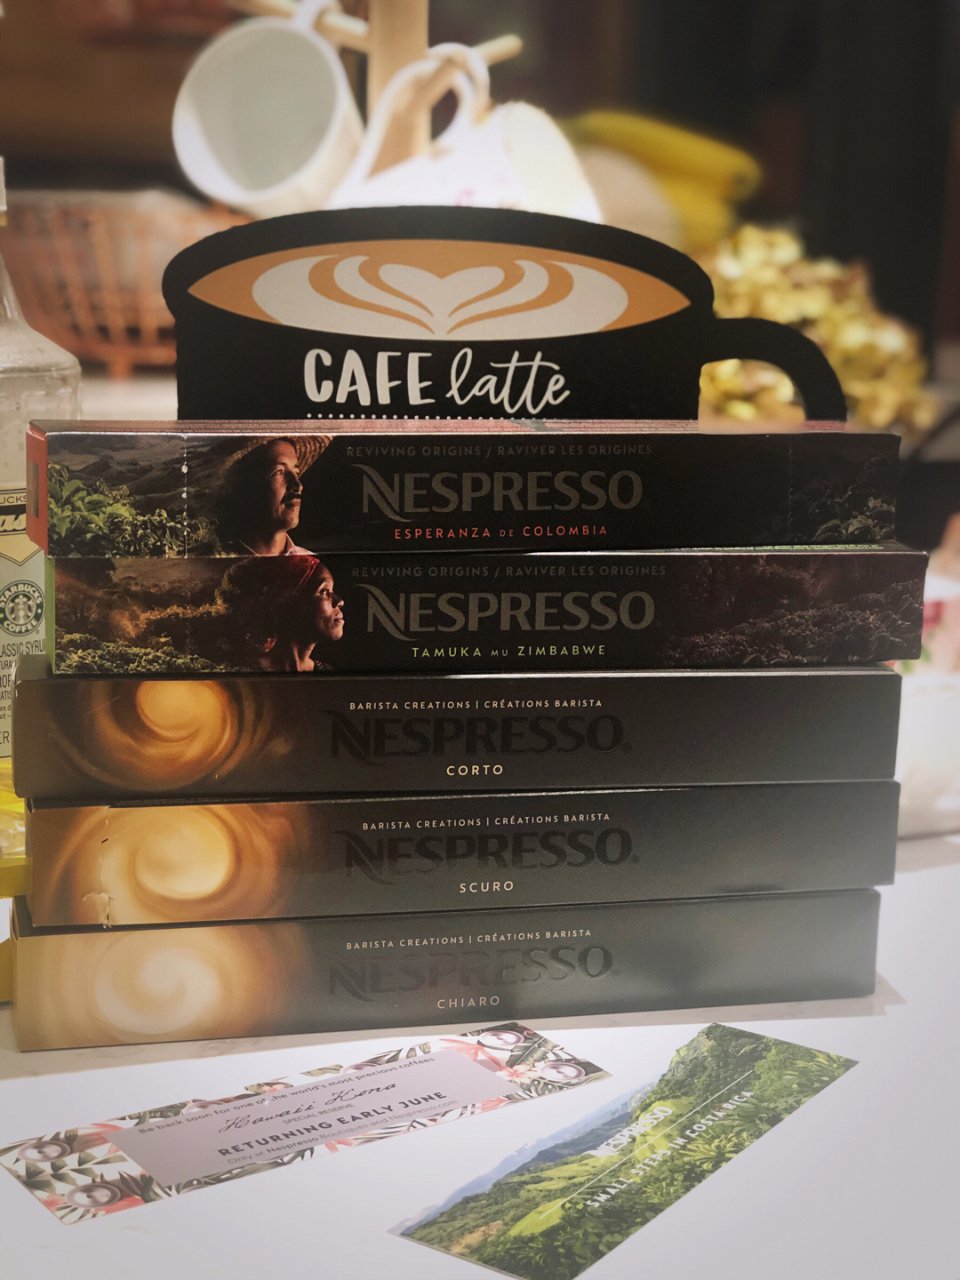 Nespresso 奈斯派索,Nespresso咖啡胶囊,咖啡续命,咖啡时光